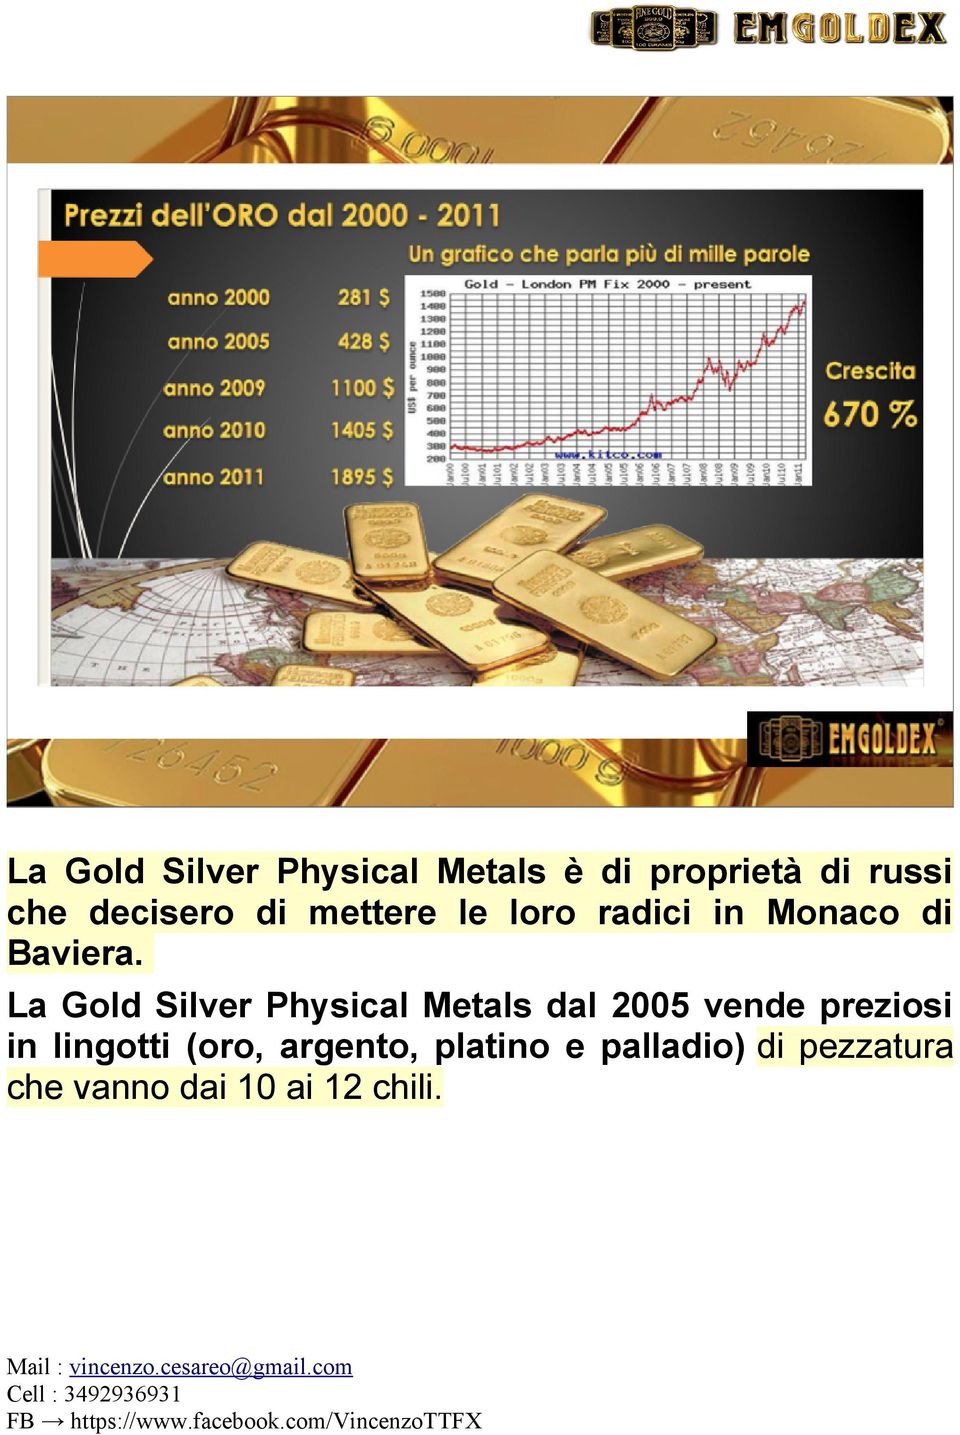 La Gold Silver Physical Metals dal 2005 vende preziosi in